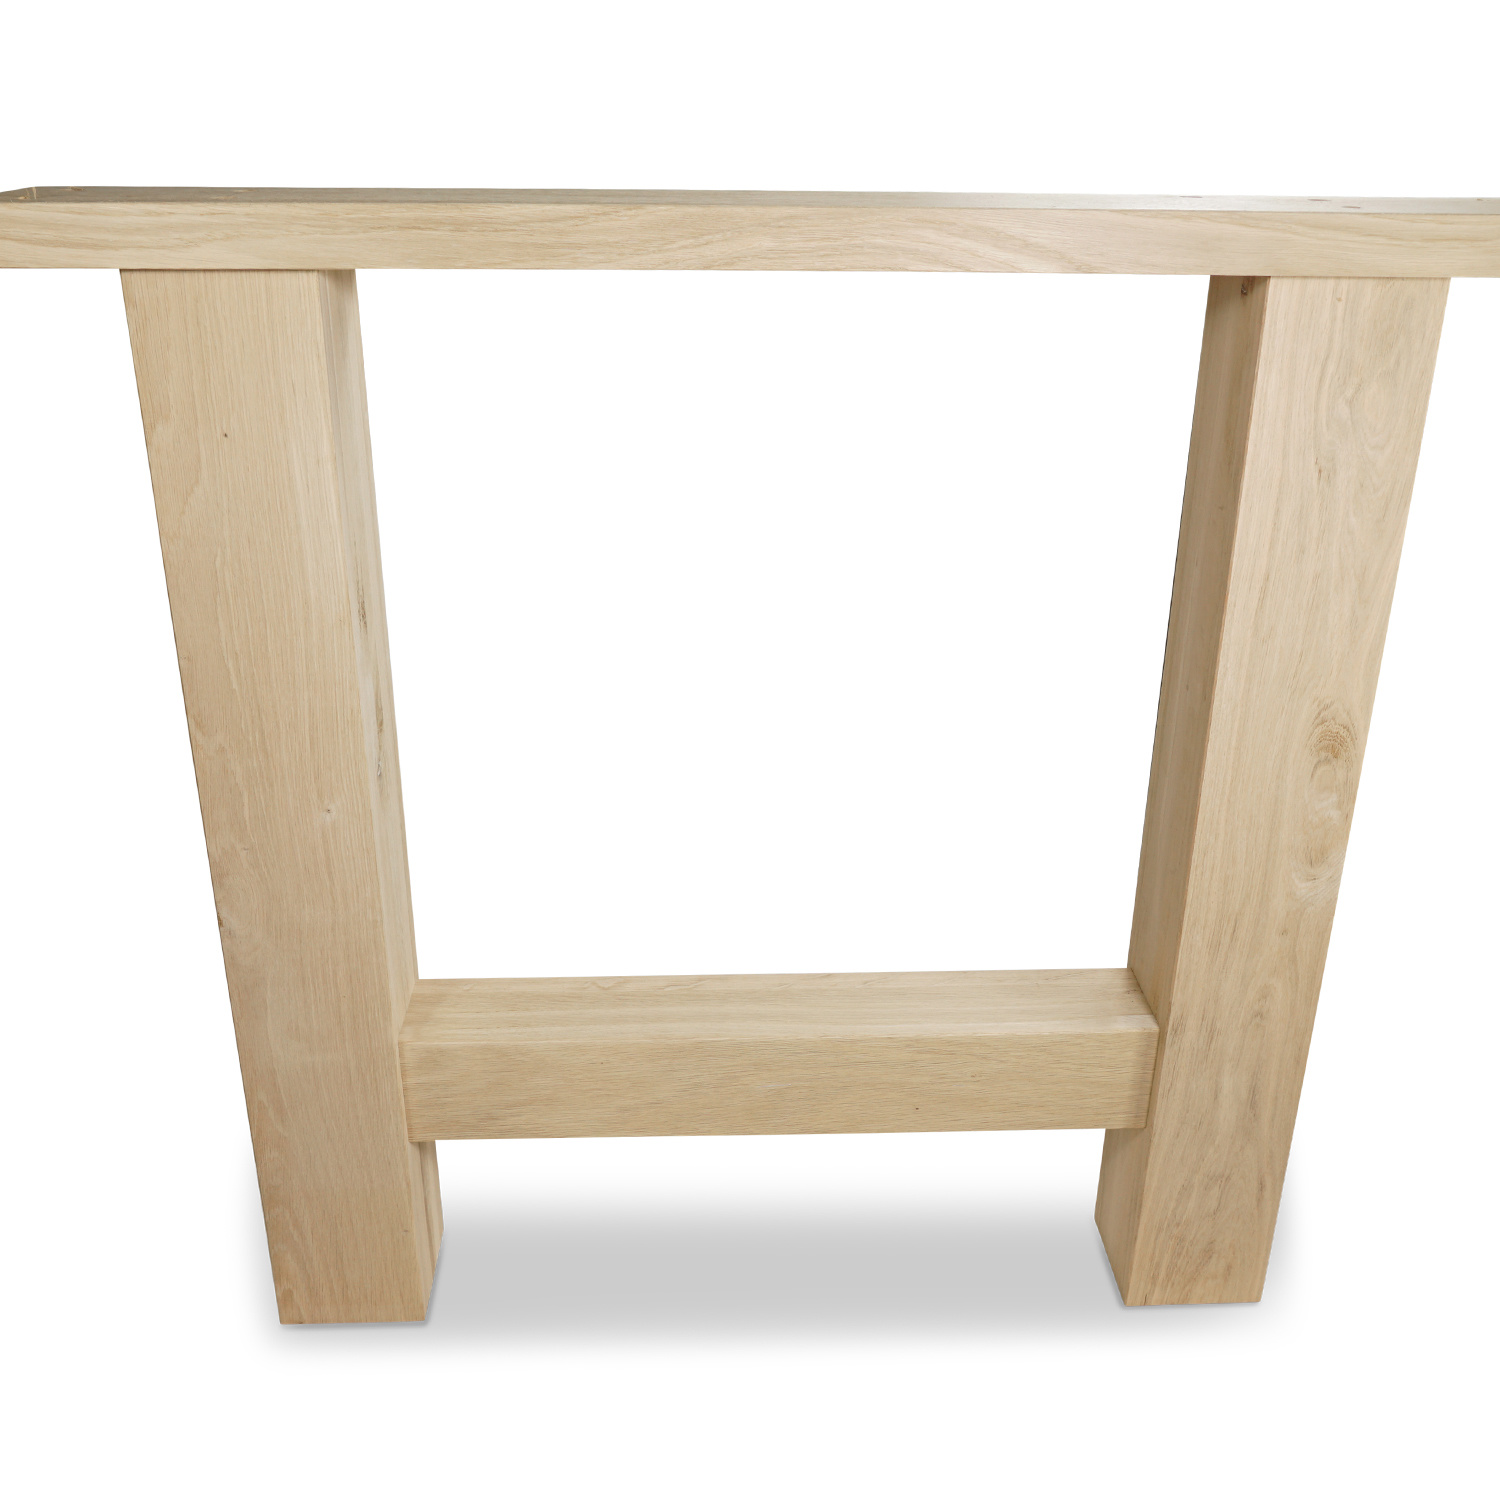  Eiken H-tafelpoten (SET - 2 stuks) 10x10cm - 85 cm breed - 72 cm hoog -  H-poot van Rustiek eikenhout - verlijmd kd 8-12%